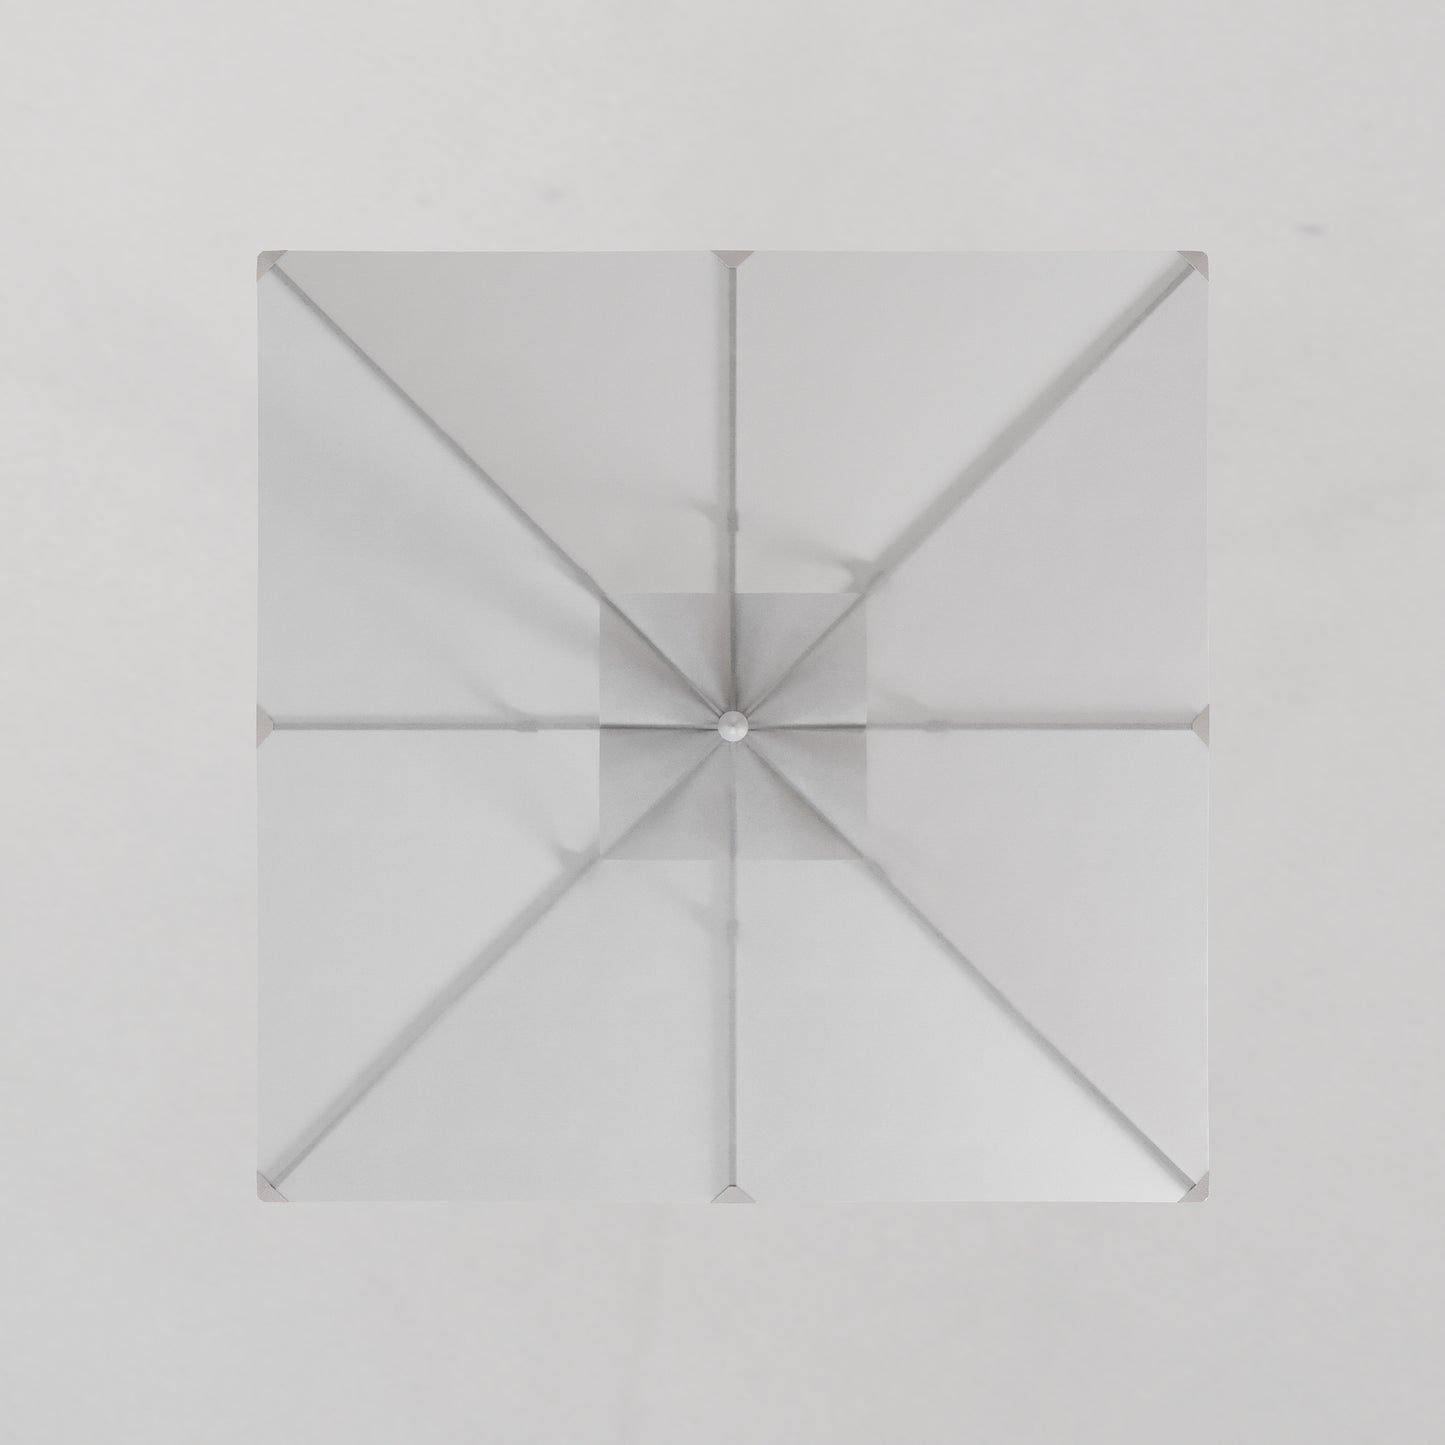 Umbrella [7.5'] Square